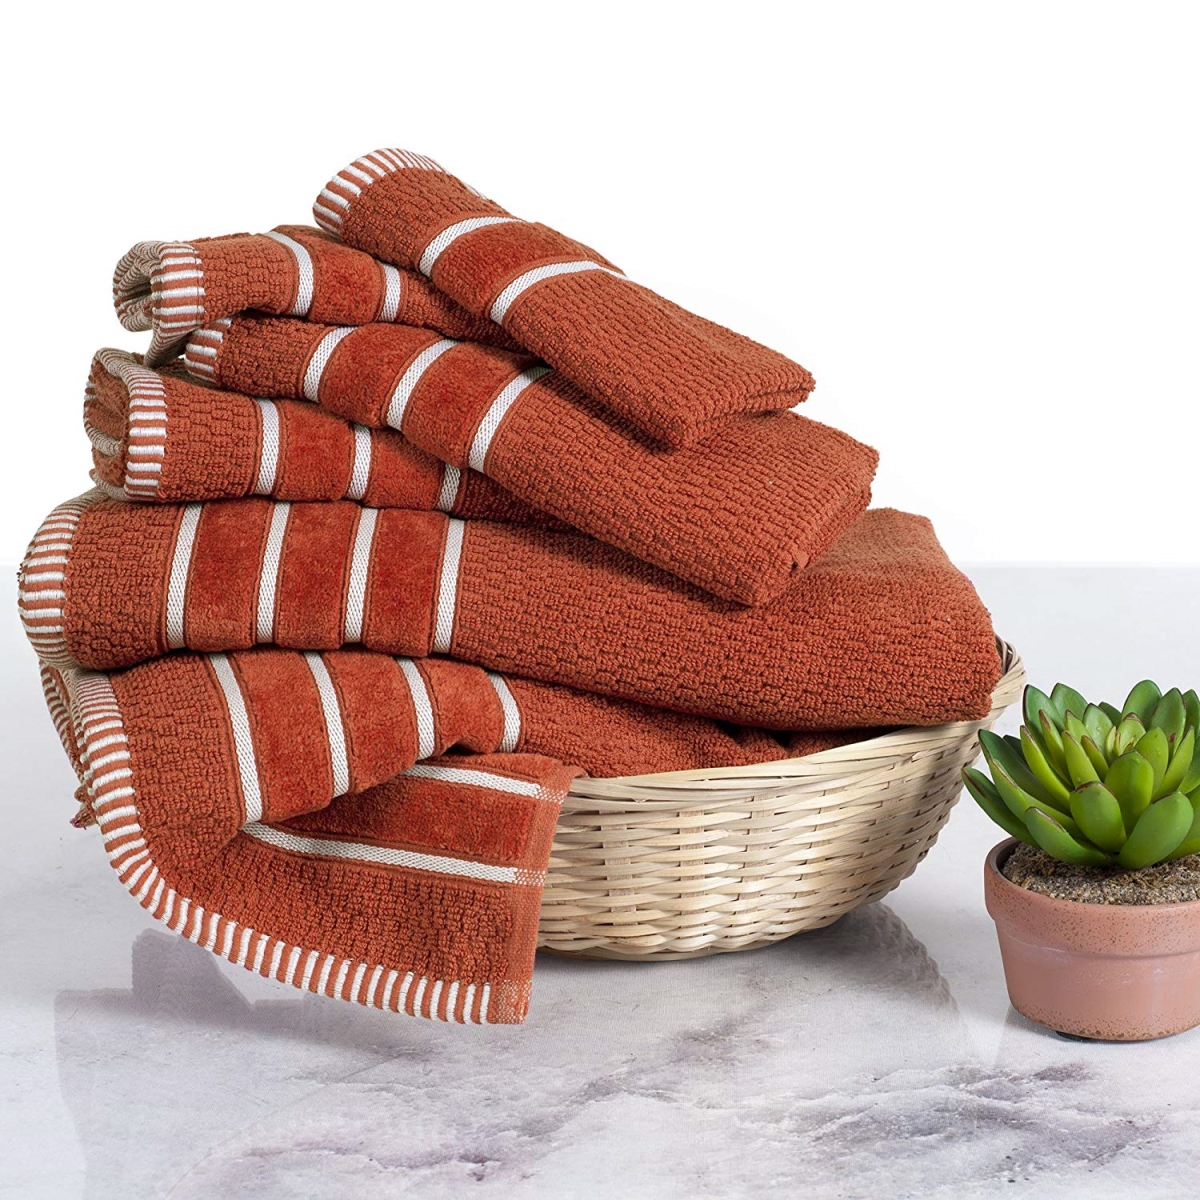 67a-74193 Home 100 Percent Cotton Rice Weave 6 Piece Towel Set - Brick